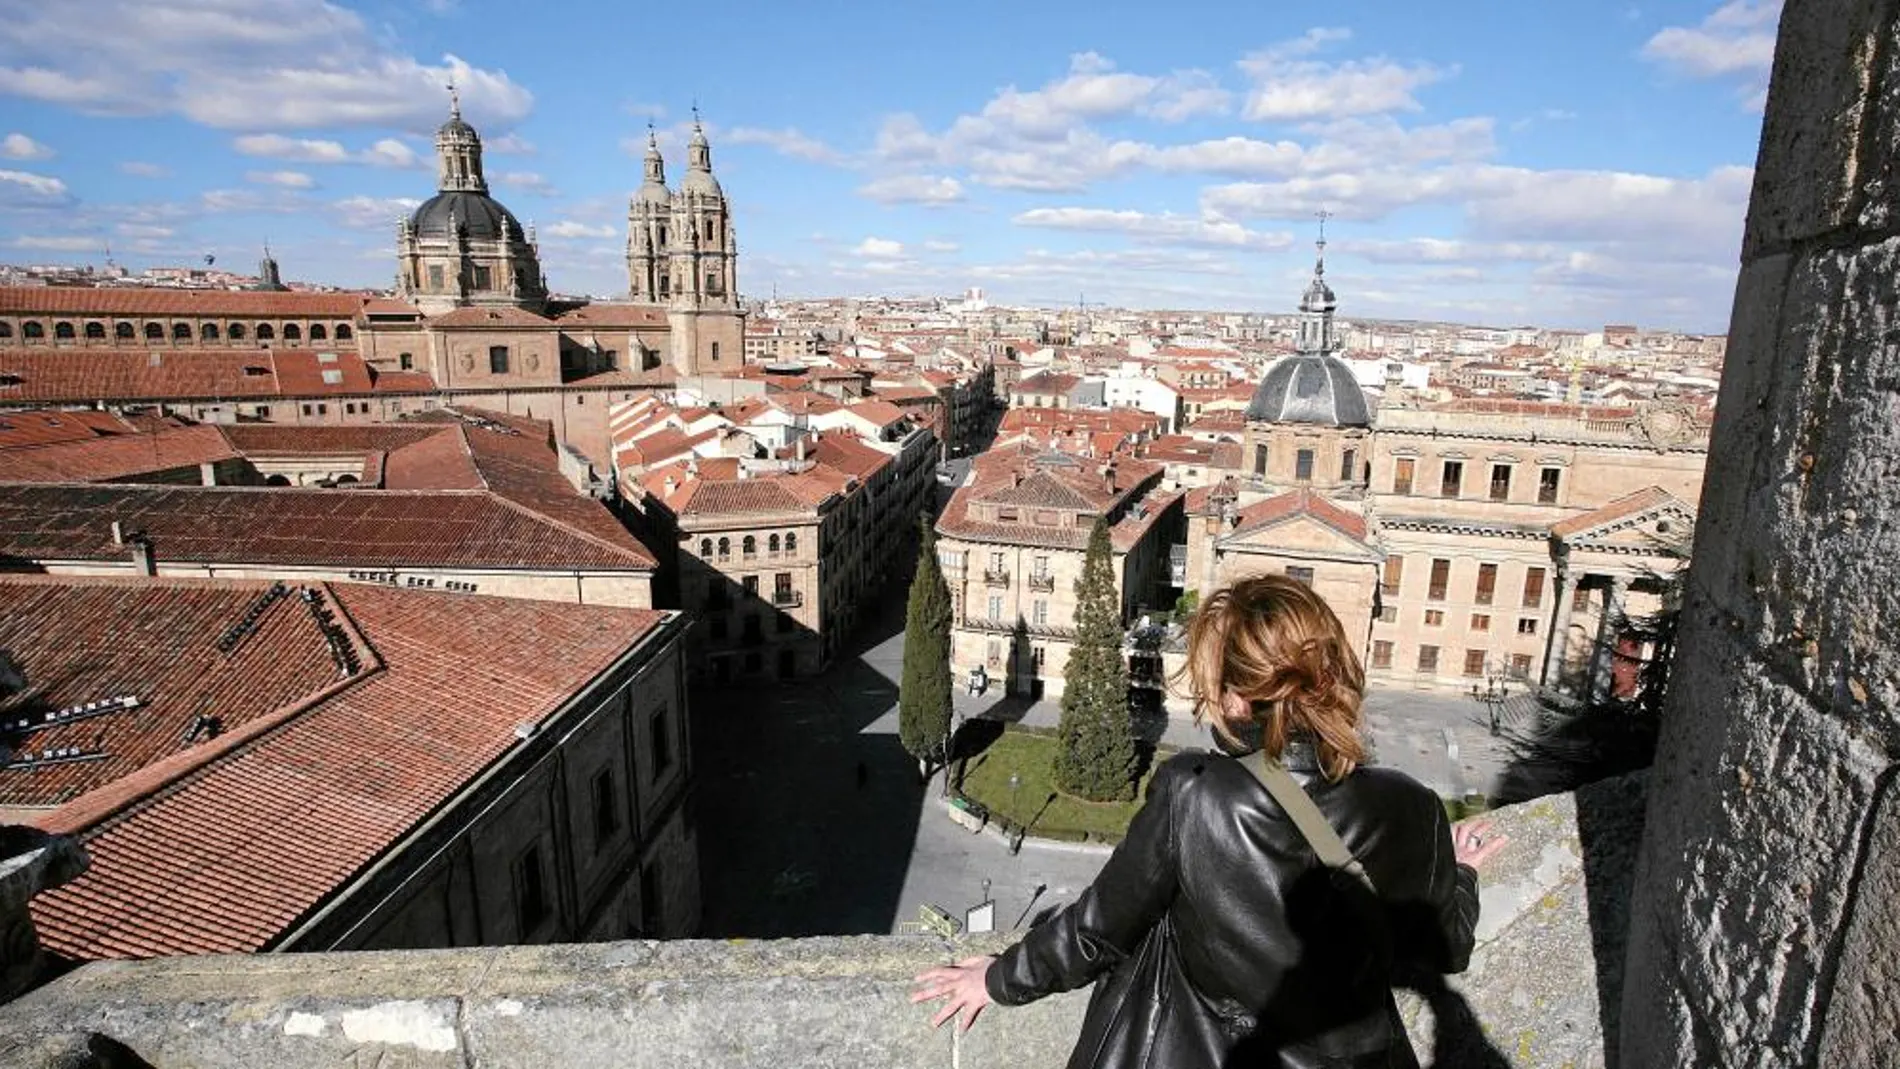 Vista general de la Ciudad Vieja de Salamanca con la catedral nueva y vieja en el horizonte